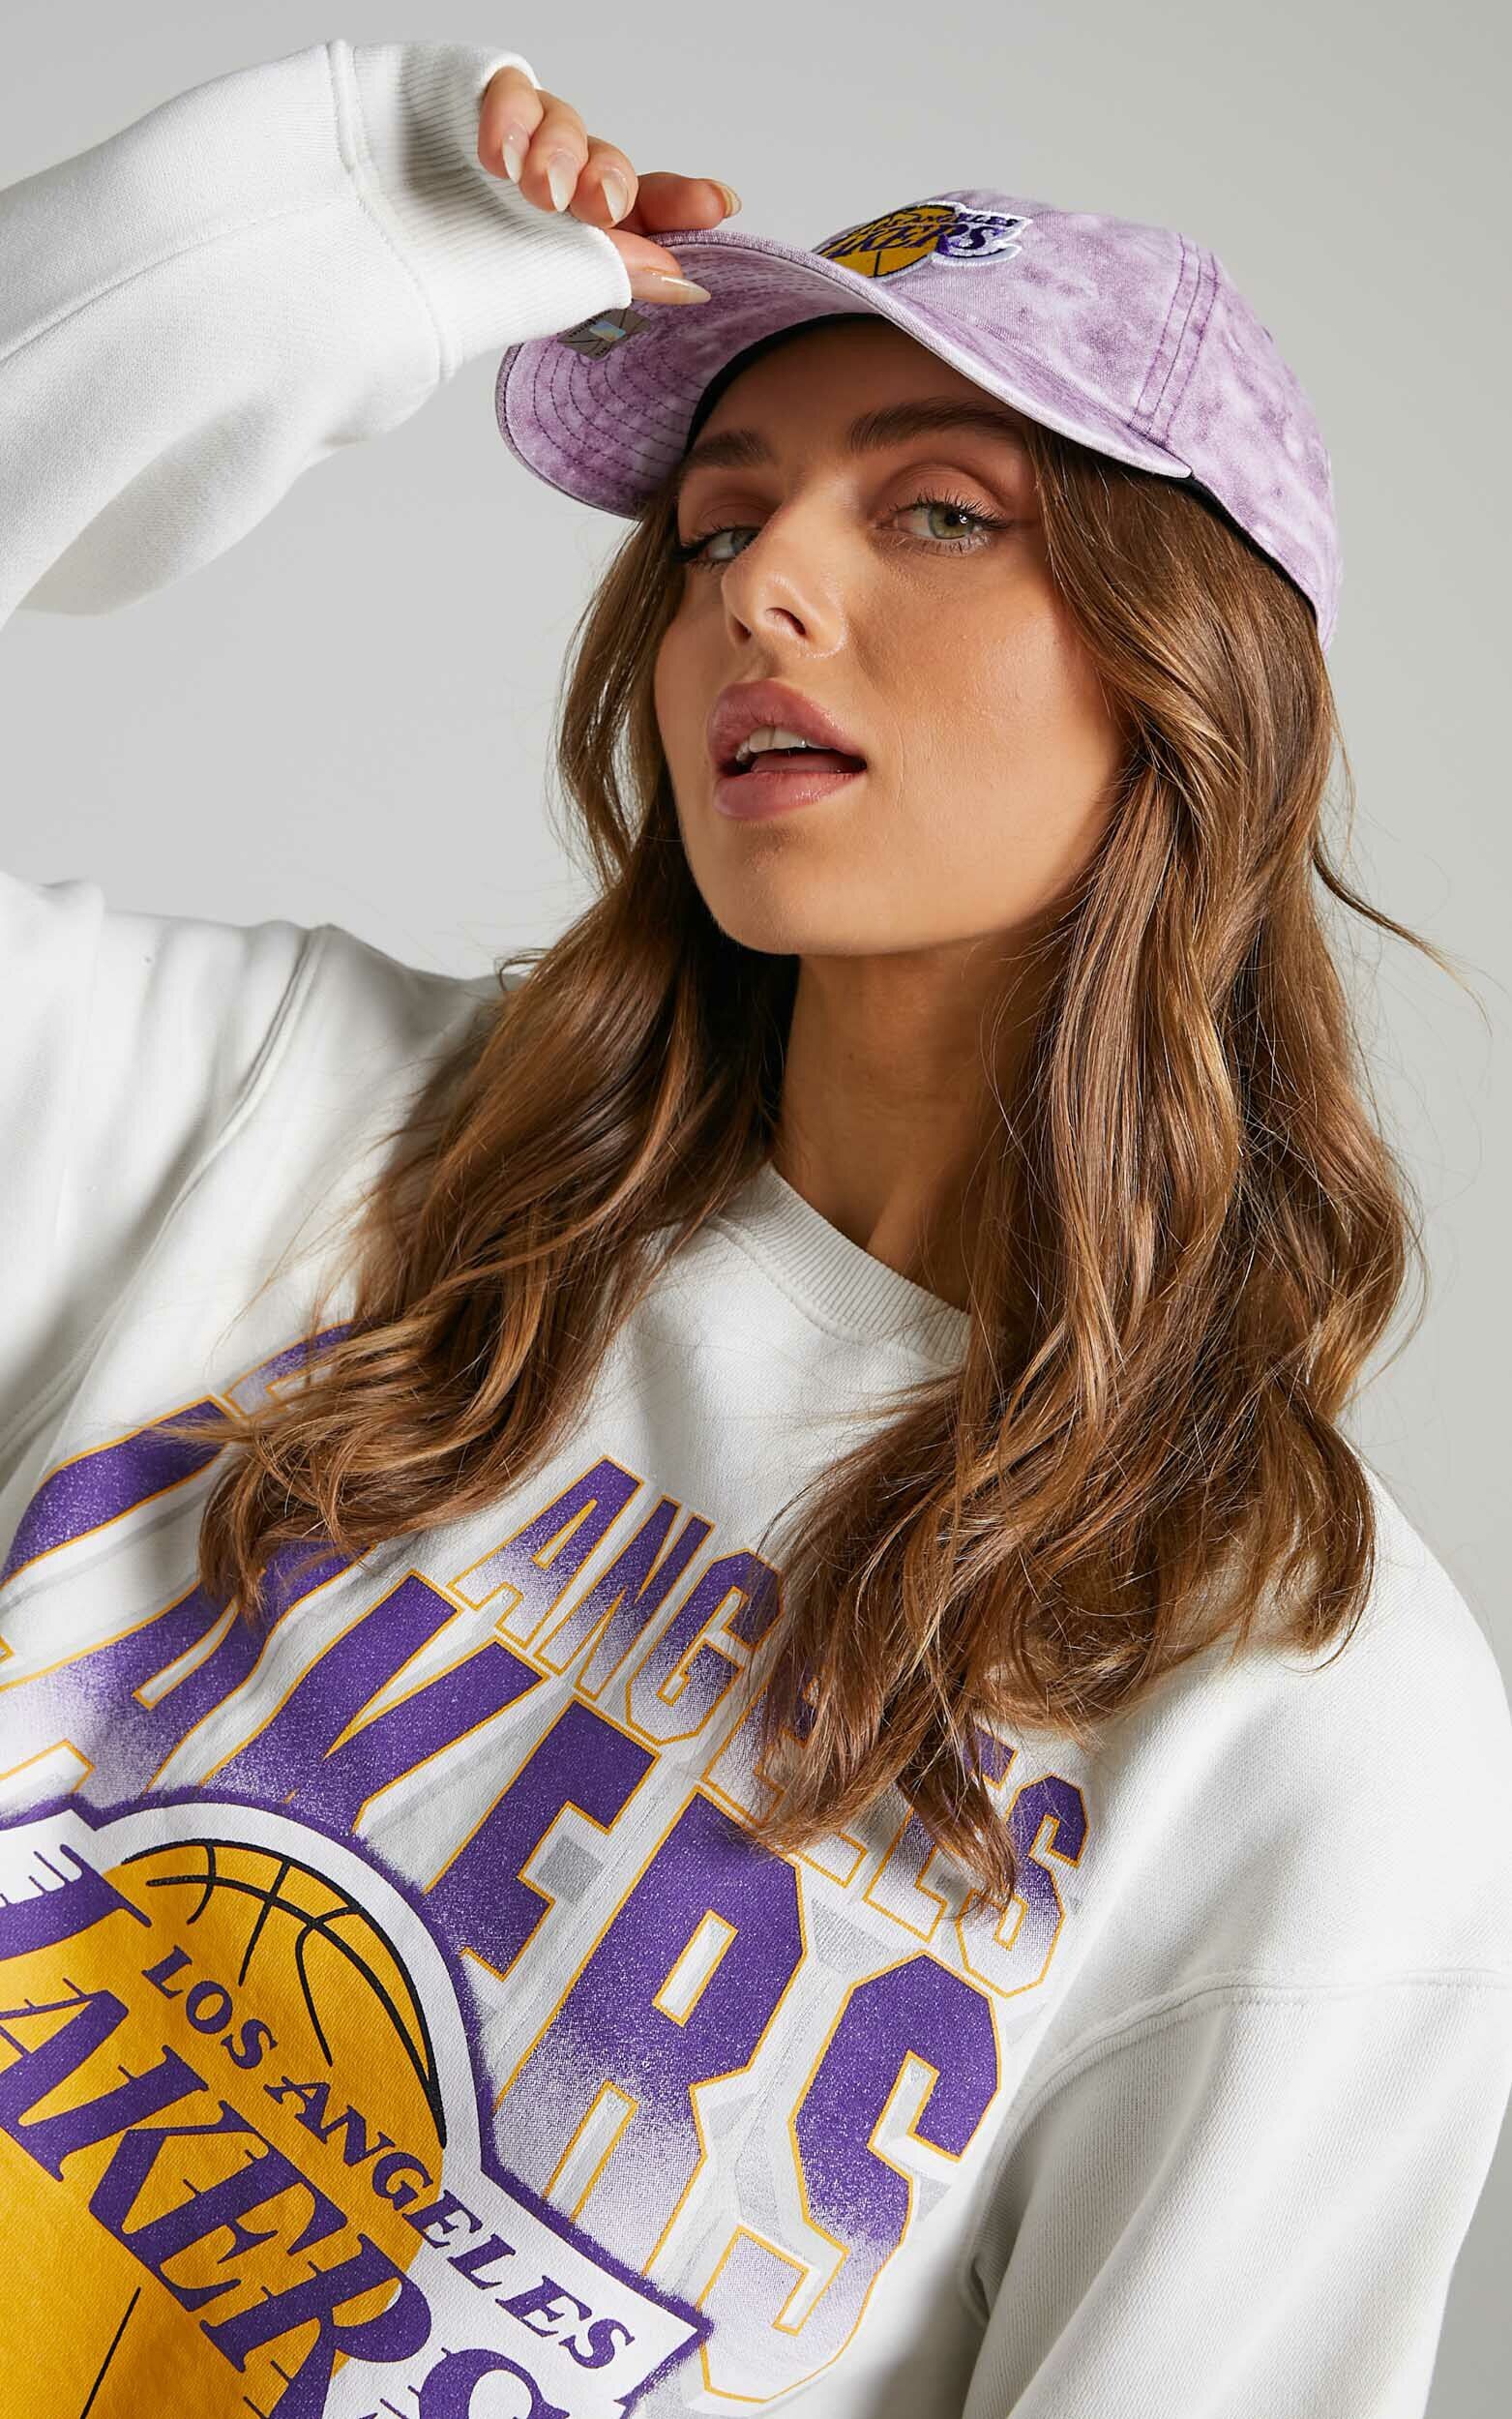 Mitchell & Ness La Lakers Sweatshirt